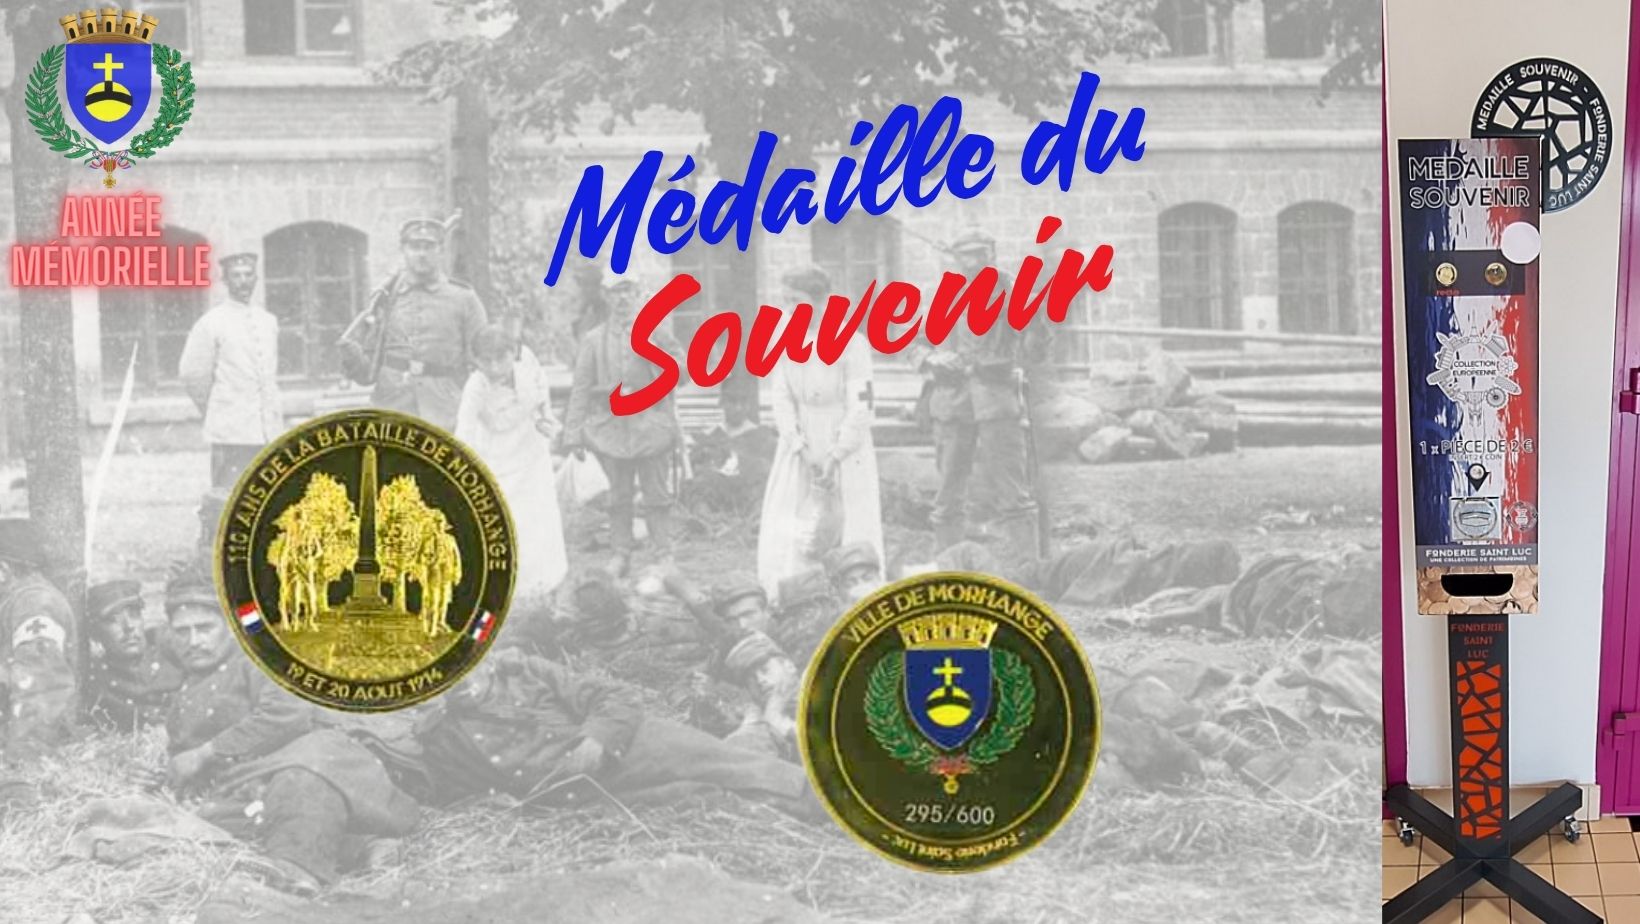 Médaille du souvenir disponible à l'accueil de notre mairie